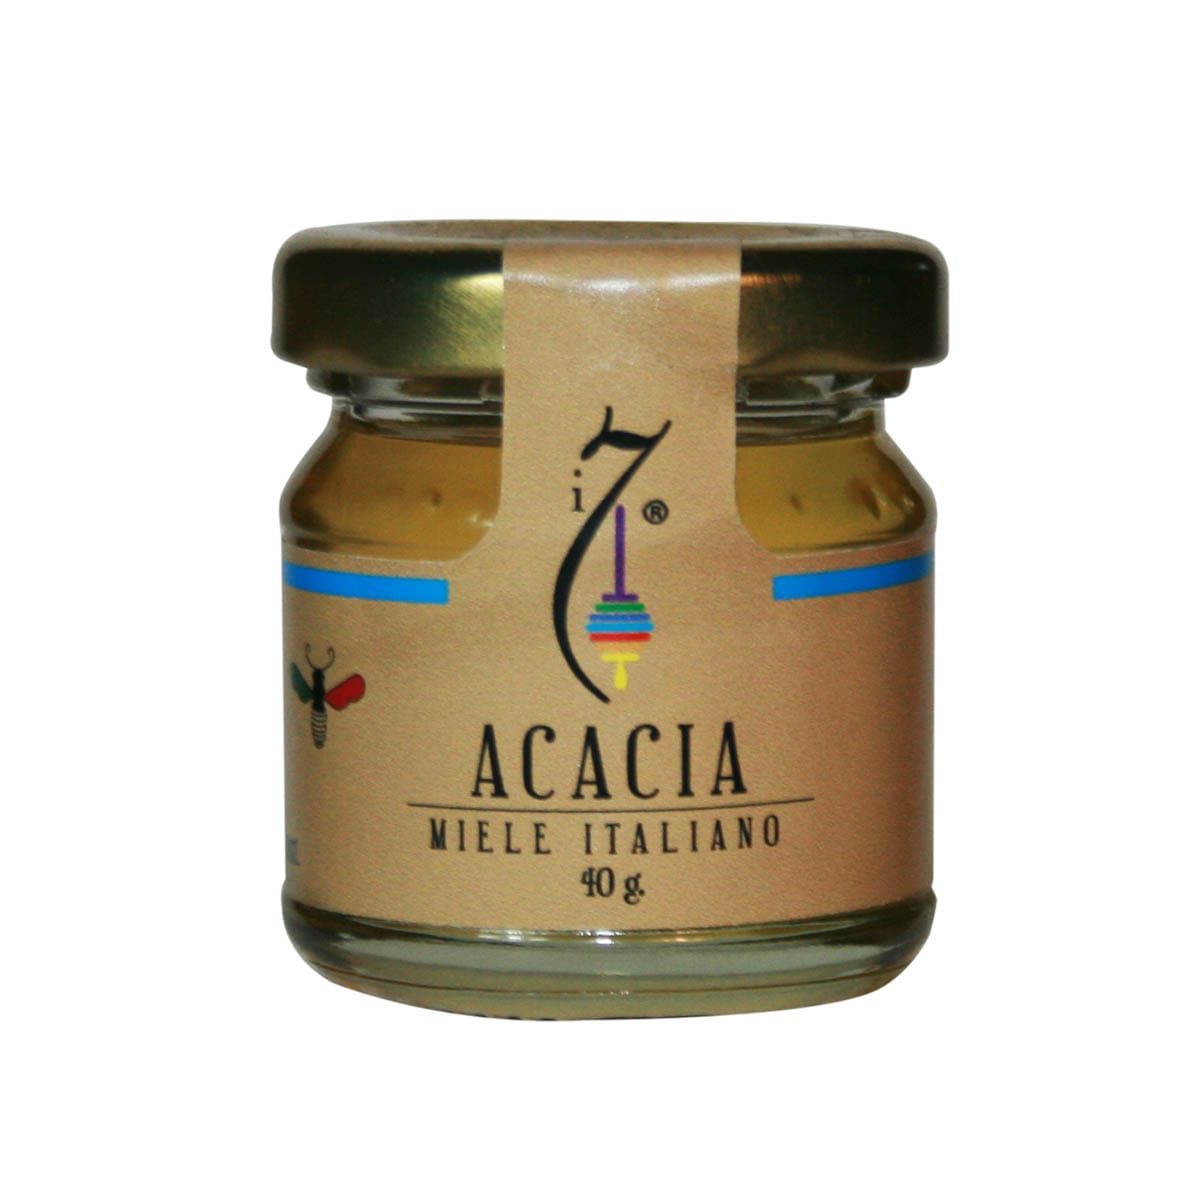 Miele di Acacia i 7 40 gr